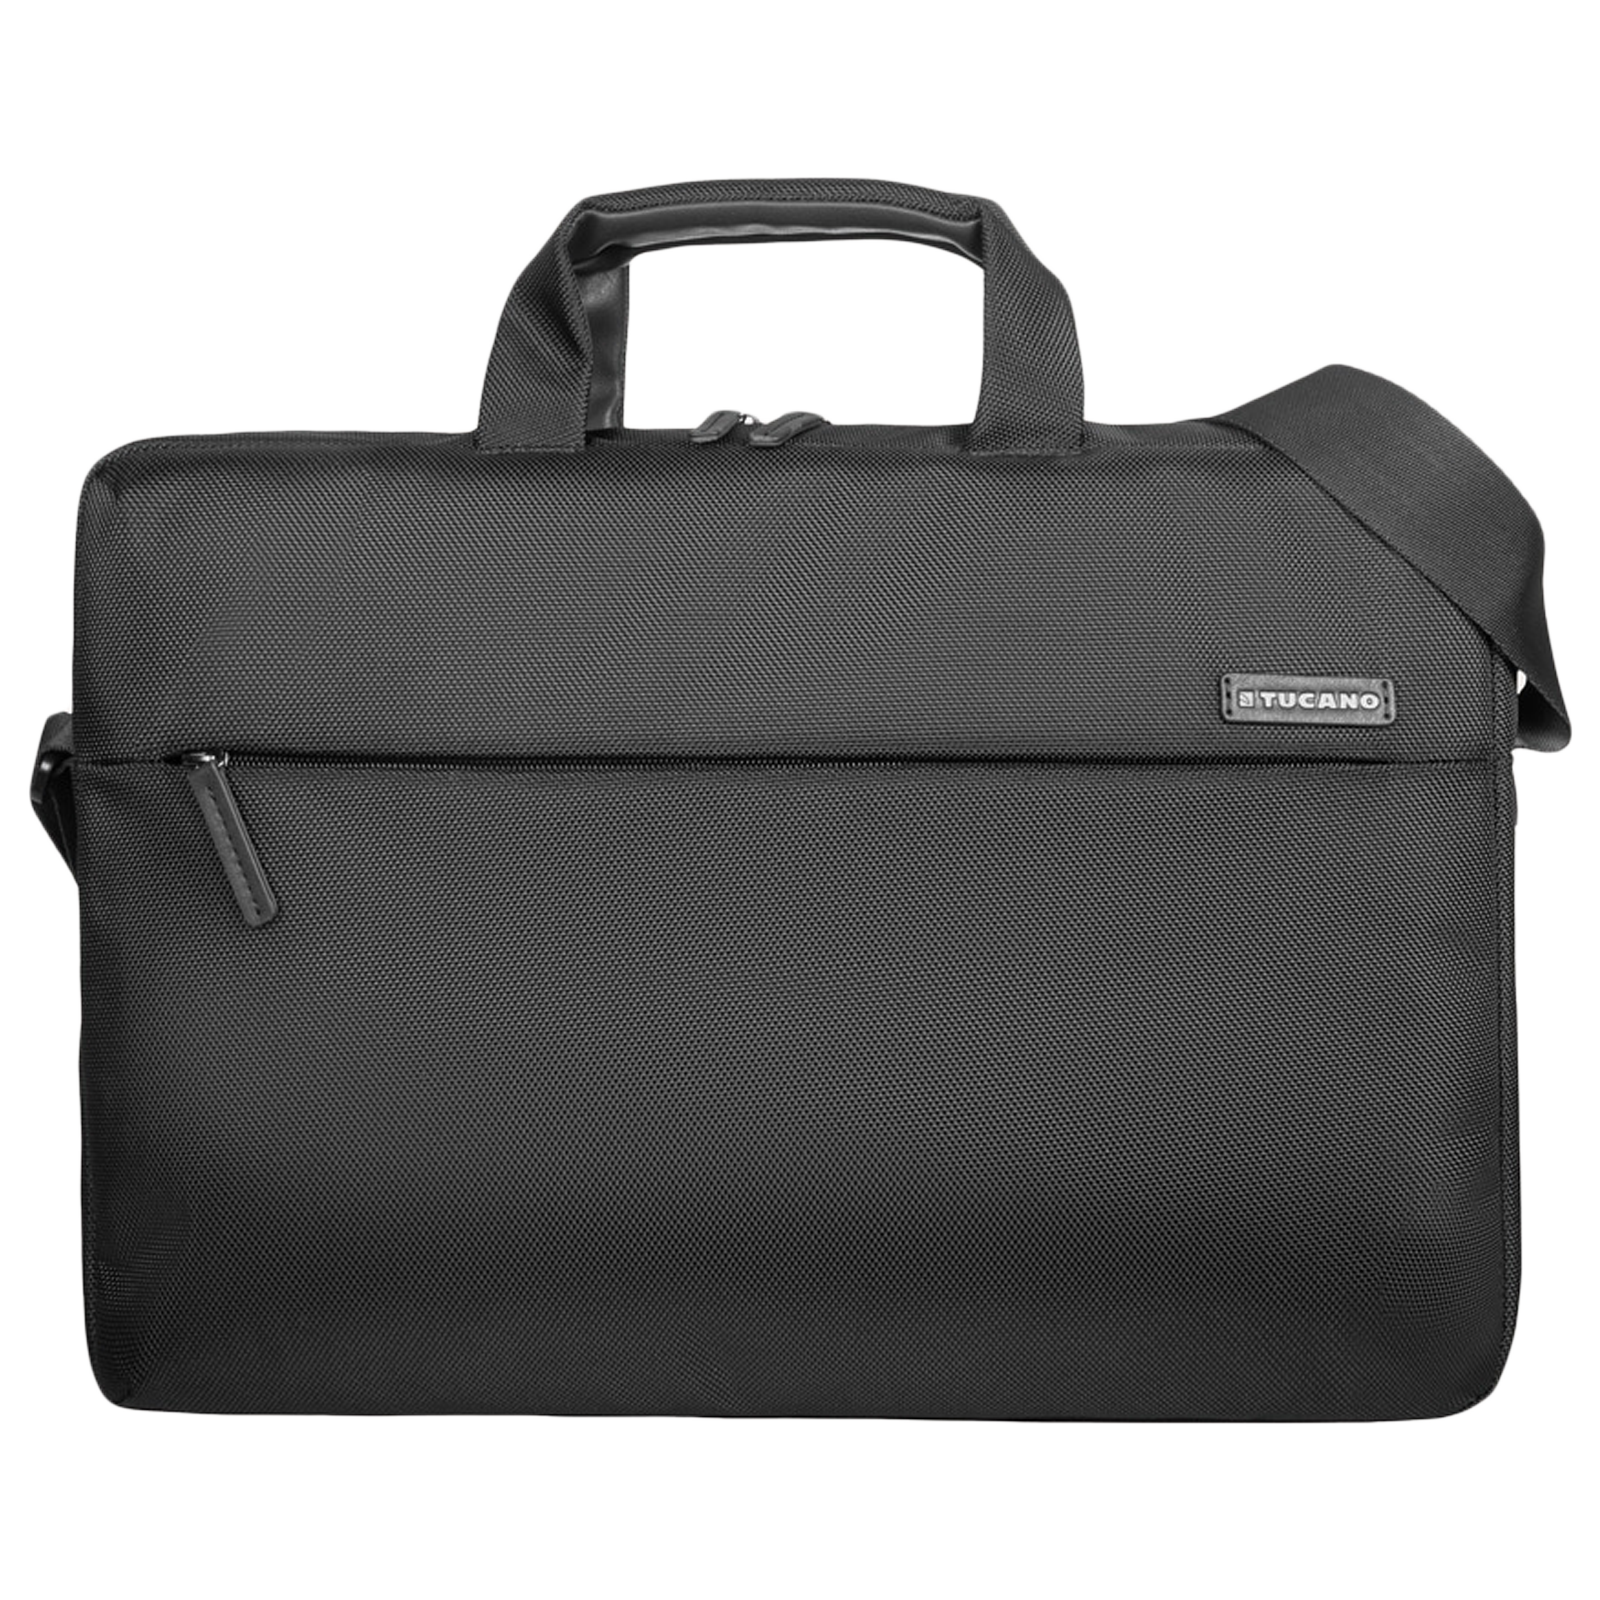 TUCANO Free & Busy PU Leather Laptop Sling Bag for 15.6 Inch Laptop (18 L, Adjustable Shoulder Strap, Black)